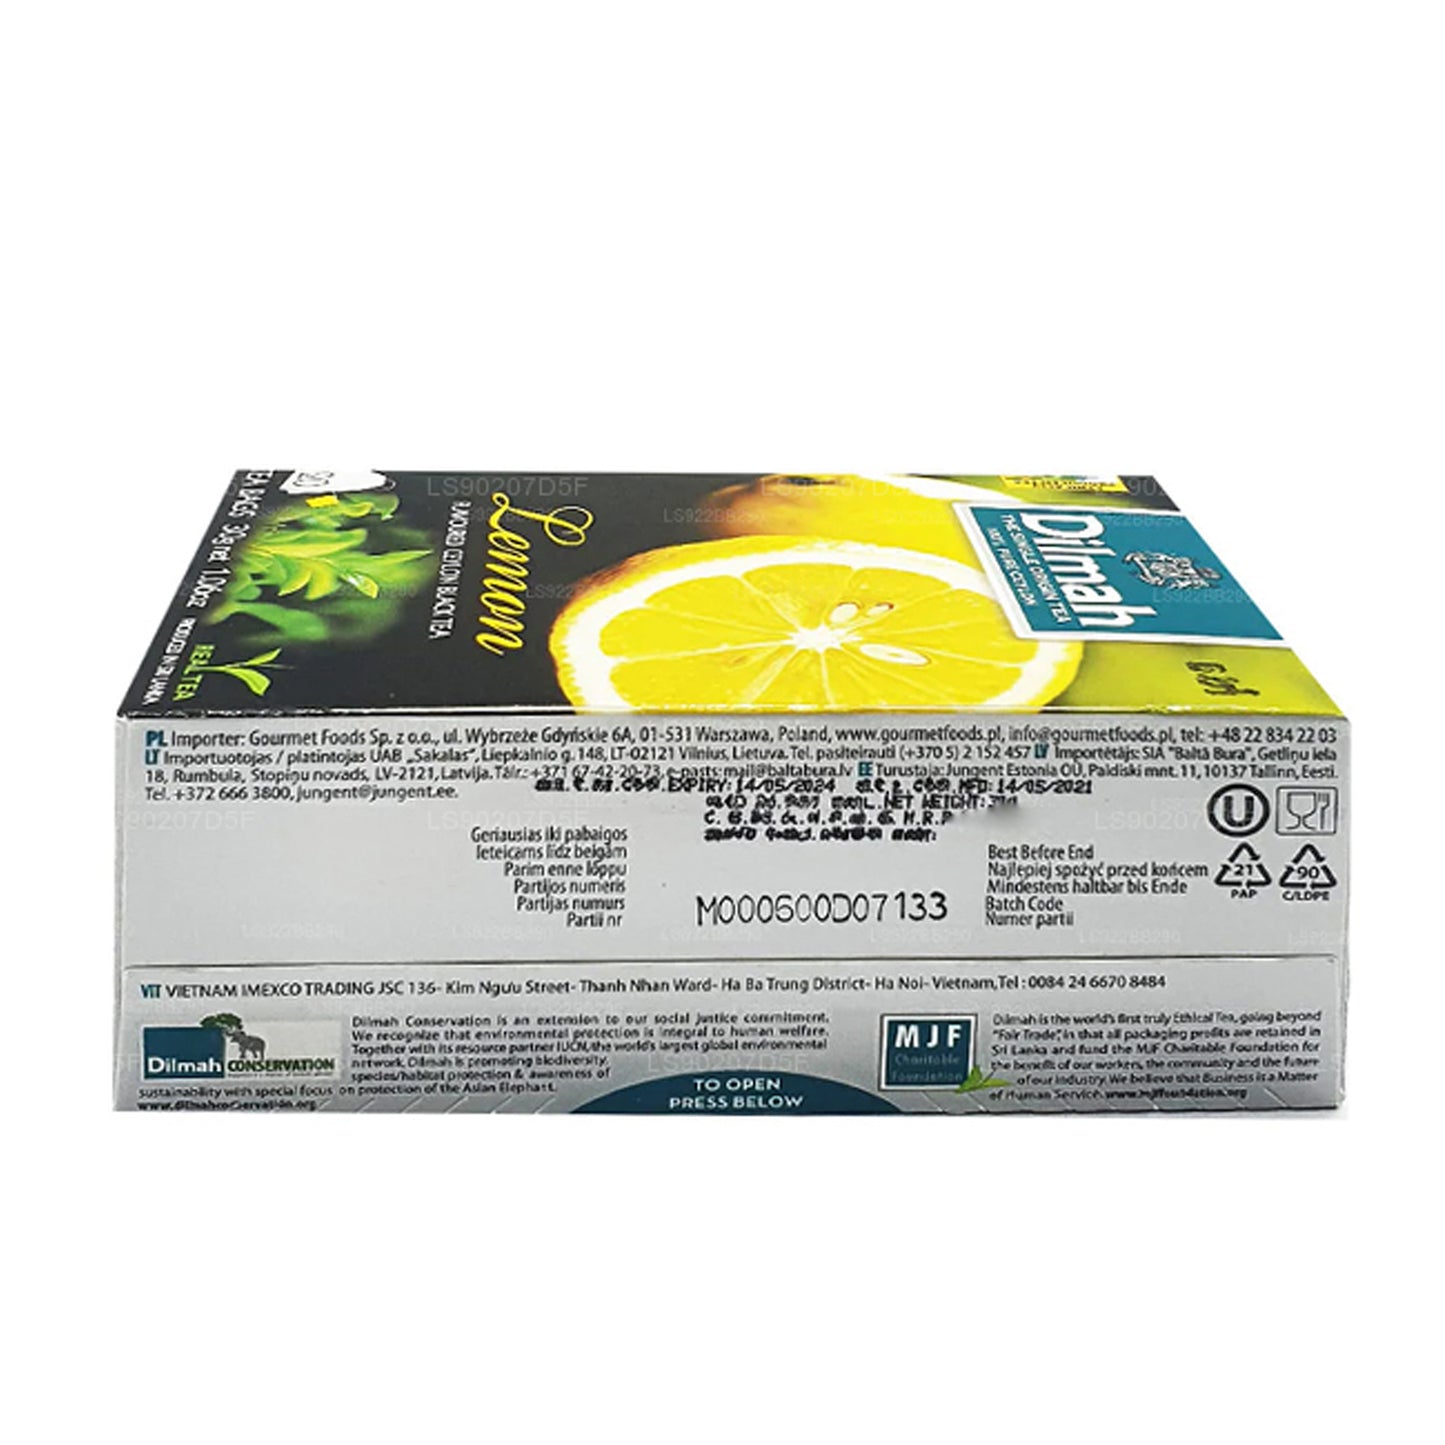 Чай Dilmah со вкусом лимона (30 г) 20 пакетиков